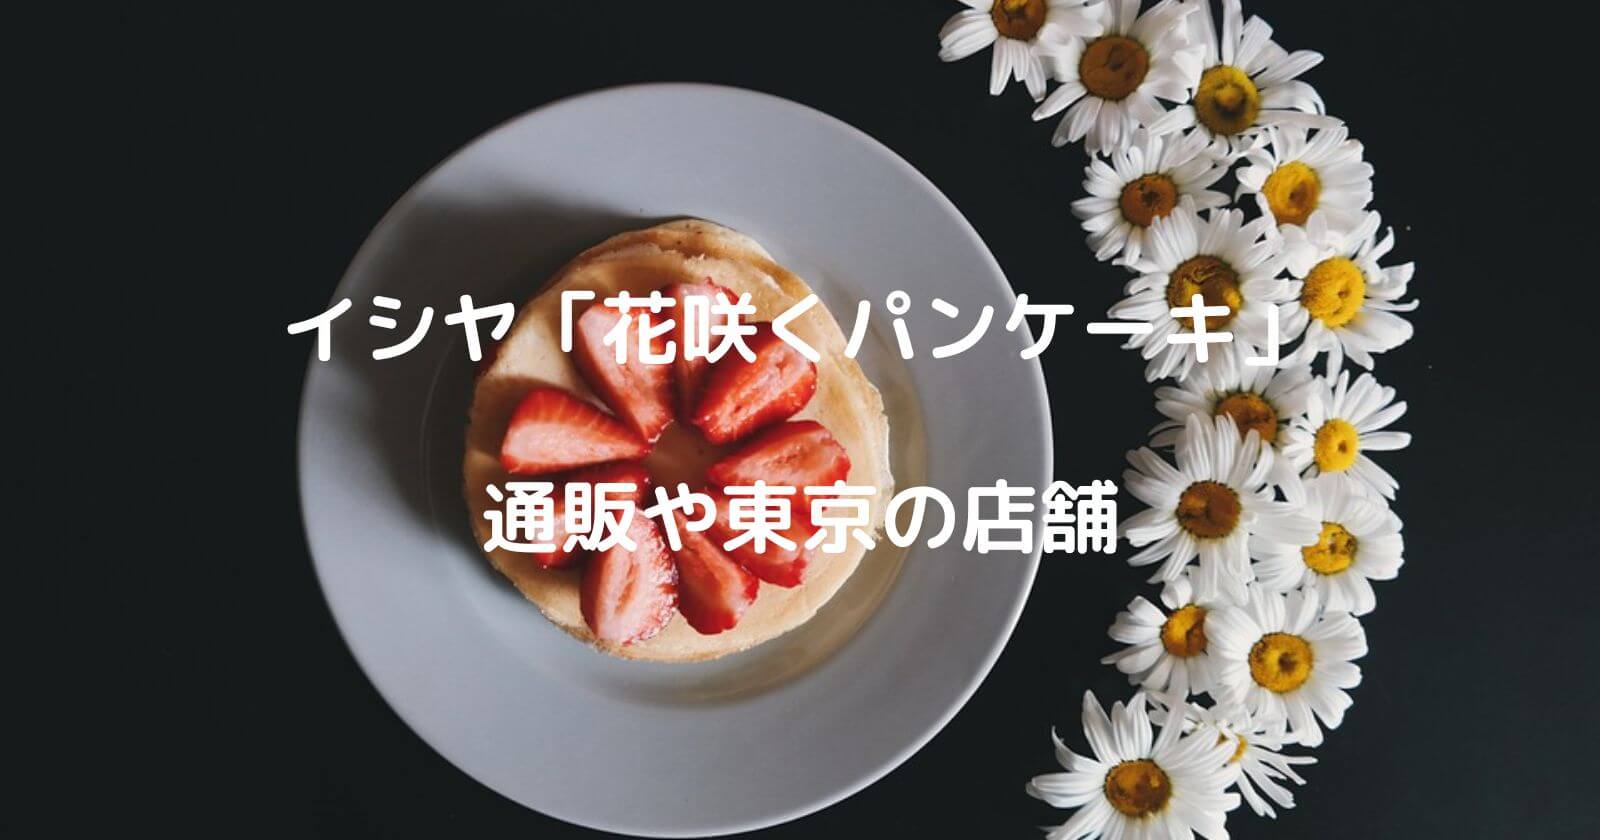 イシヤ「花咲くパンケーキ」のお取り寄せ通販や東京の店舗